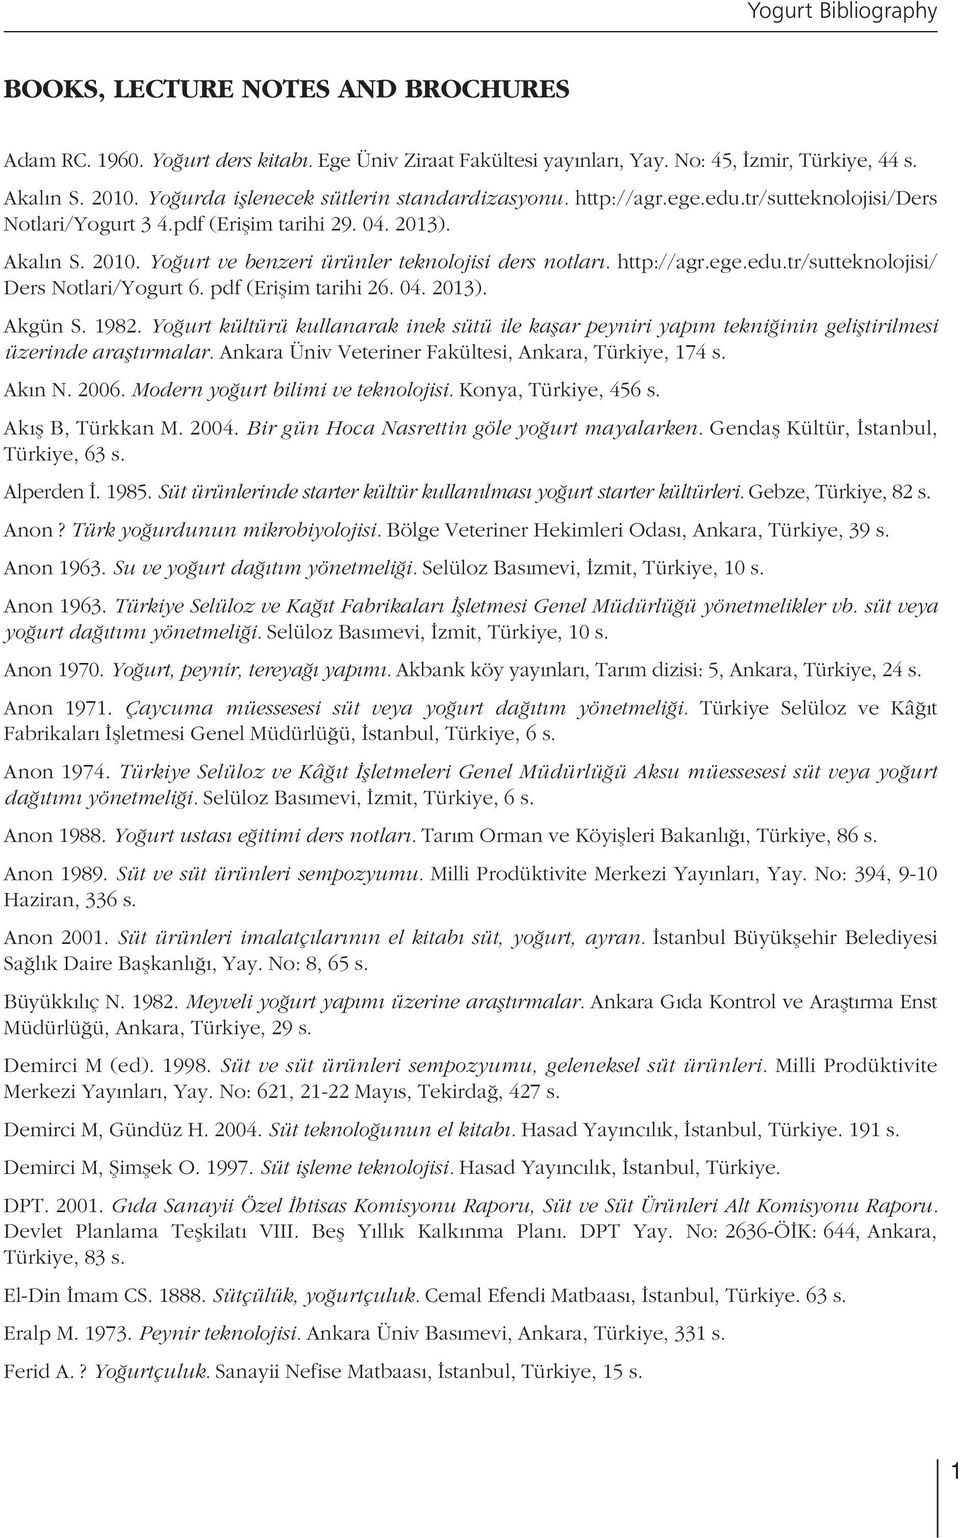 Yo urt ve benzeri ürünler teknolojisi ders notlar. http://agr.ege.edu.tr/sutteknolojisi/ Ders Notlari/Yogurt 6. pdf (Eriflim tarihi 26. 04. 2013). Akgün S. 1982.